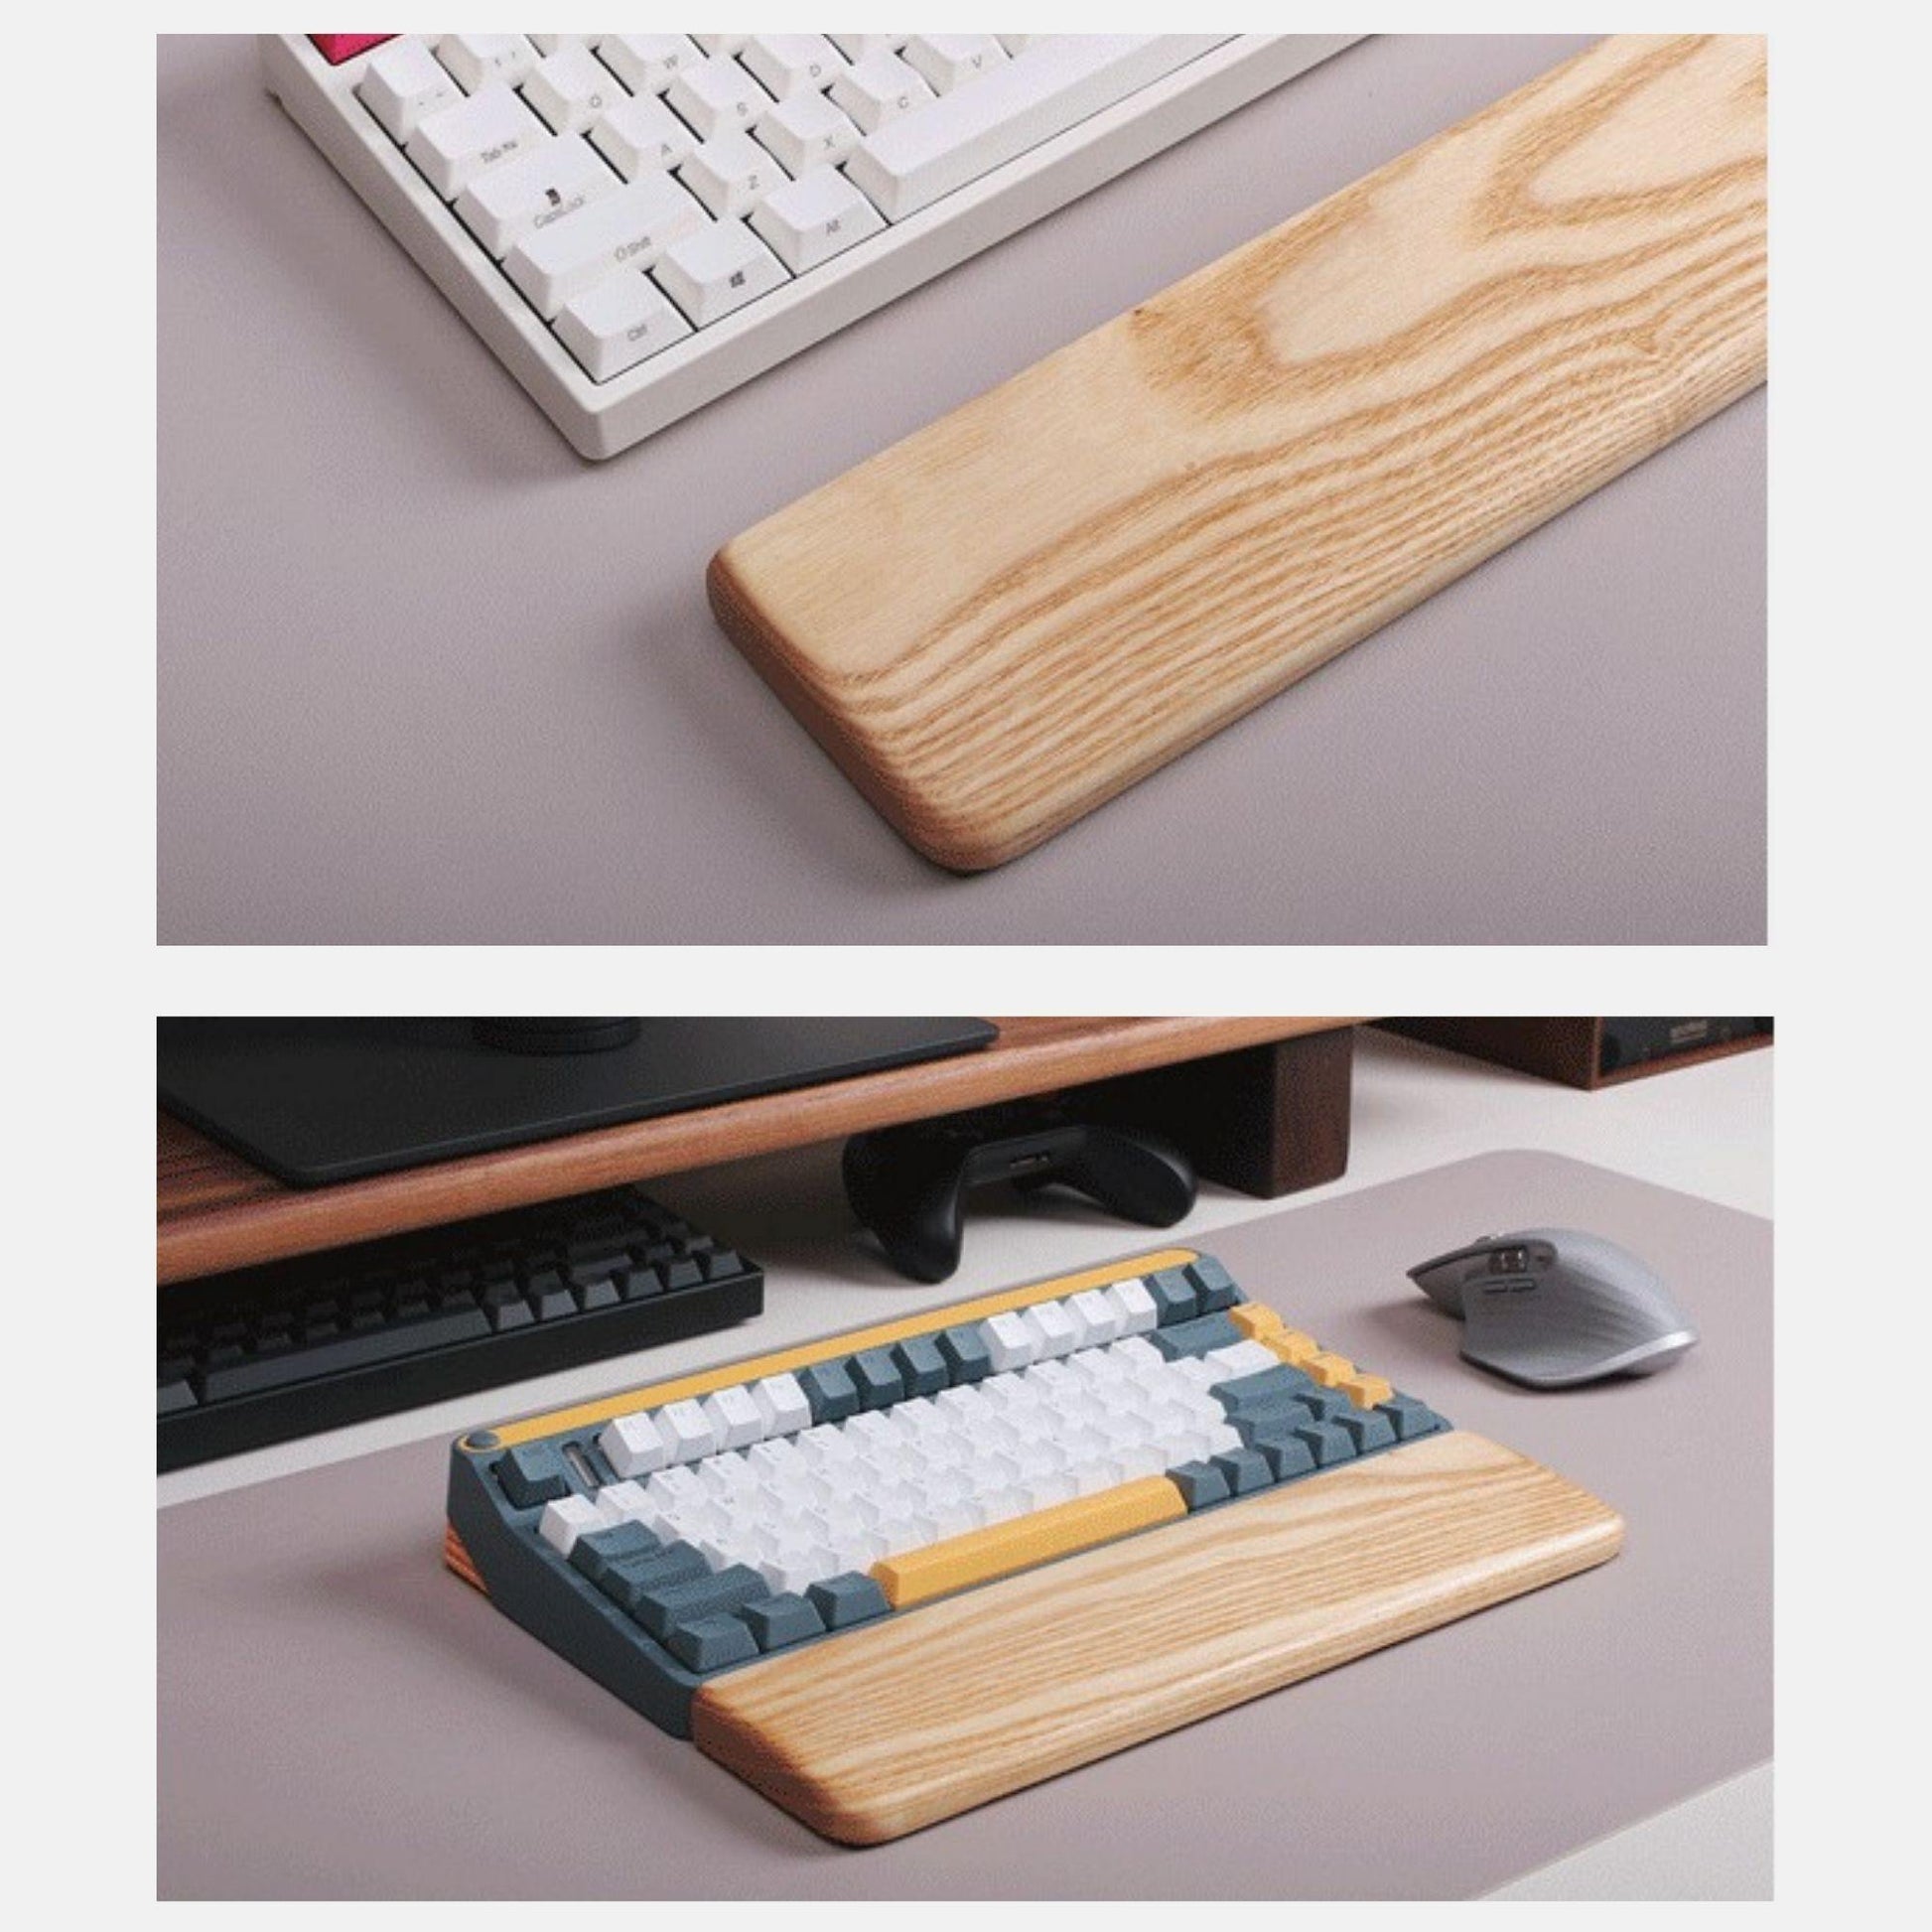 wooden keyboard wrist rest ash wood